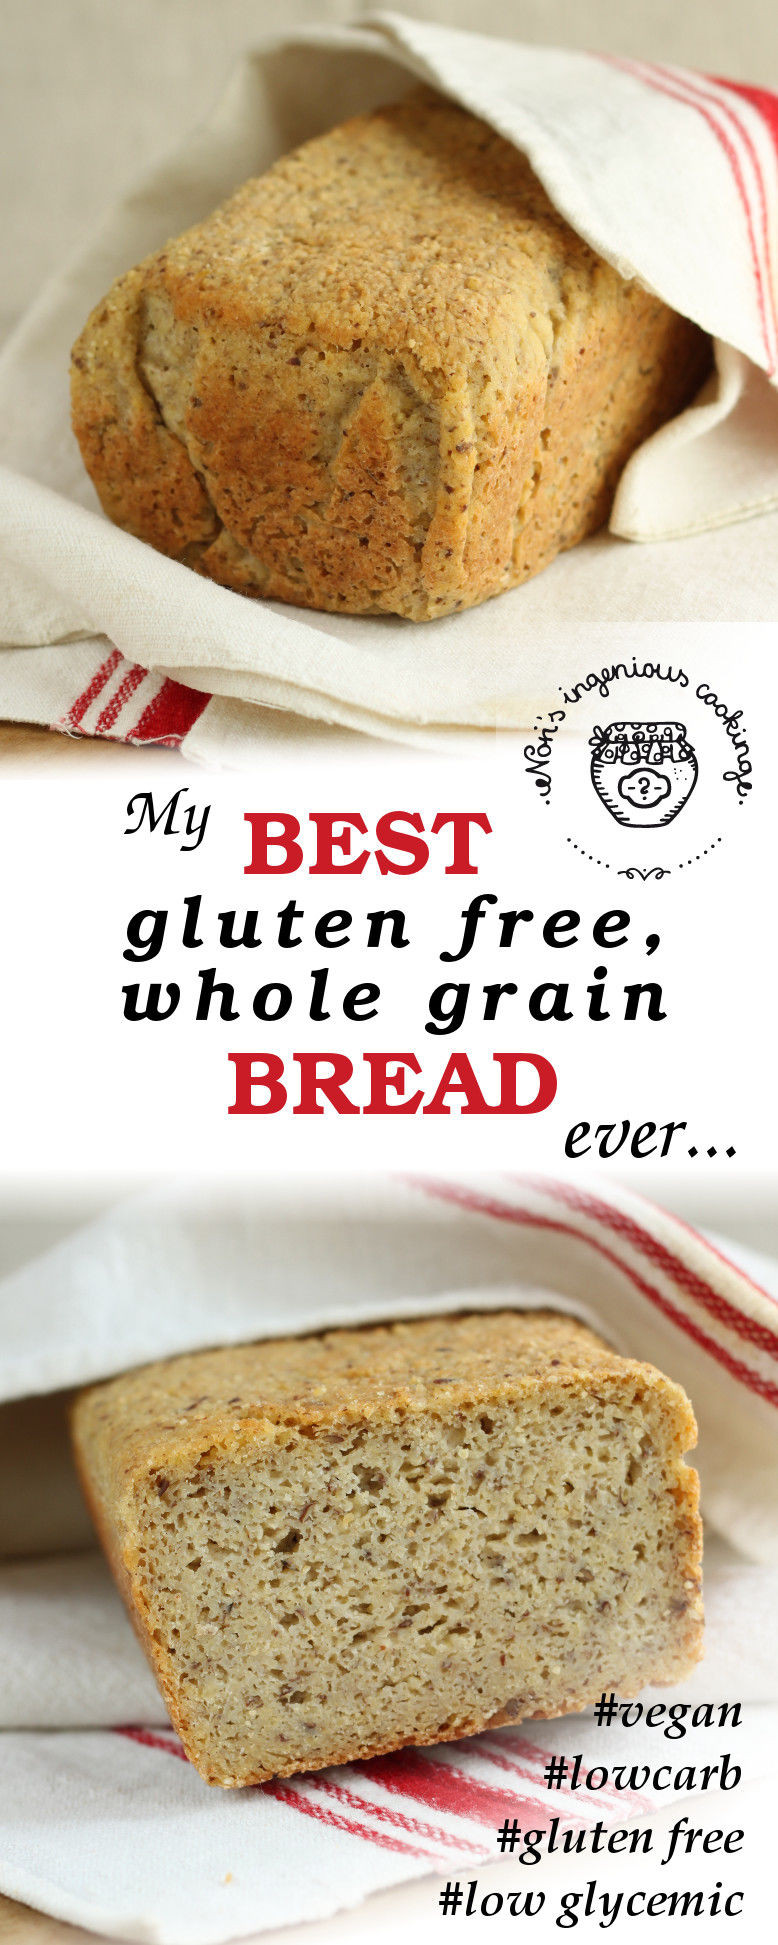 Grain Free Bread Glutenfree
 My best gluten free whole grain bread ever vegan